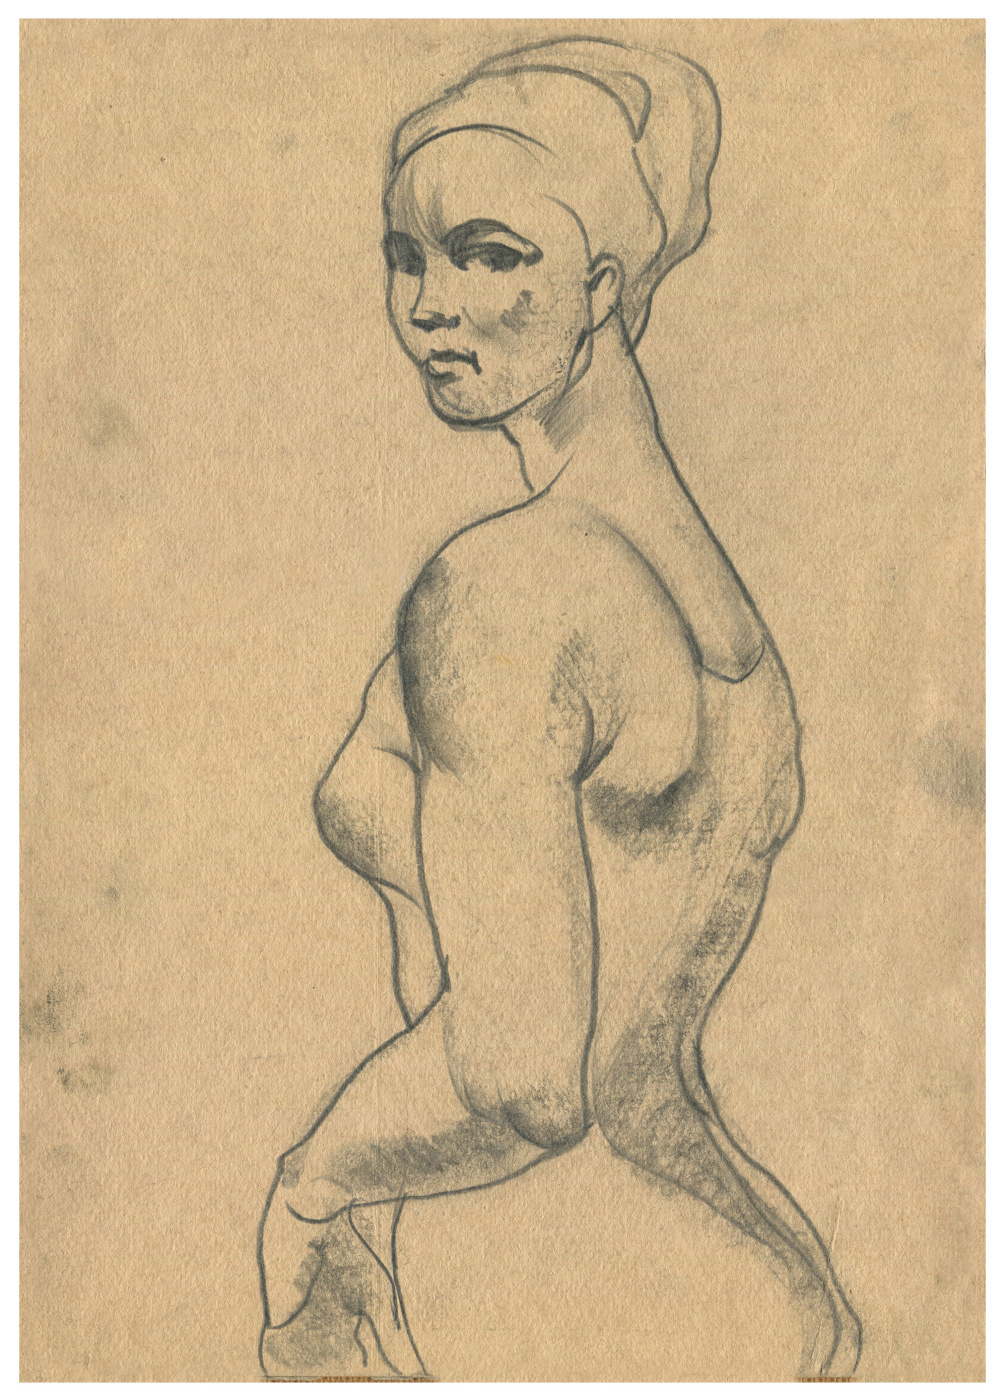 Alexandrovich Rudolf Pavlov. A sketch of a dancer.